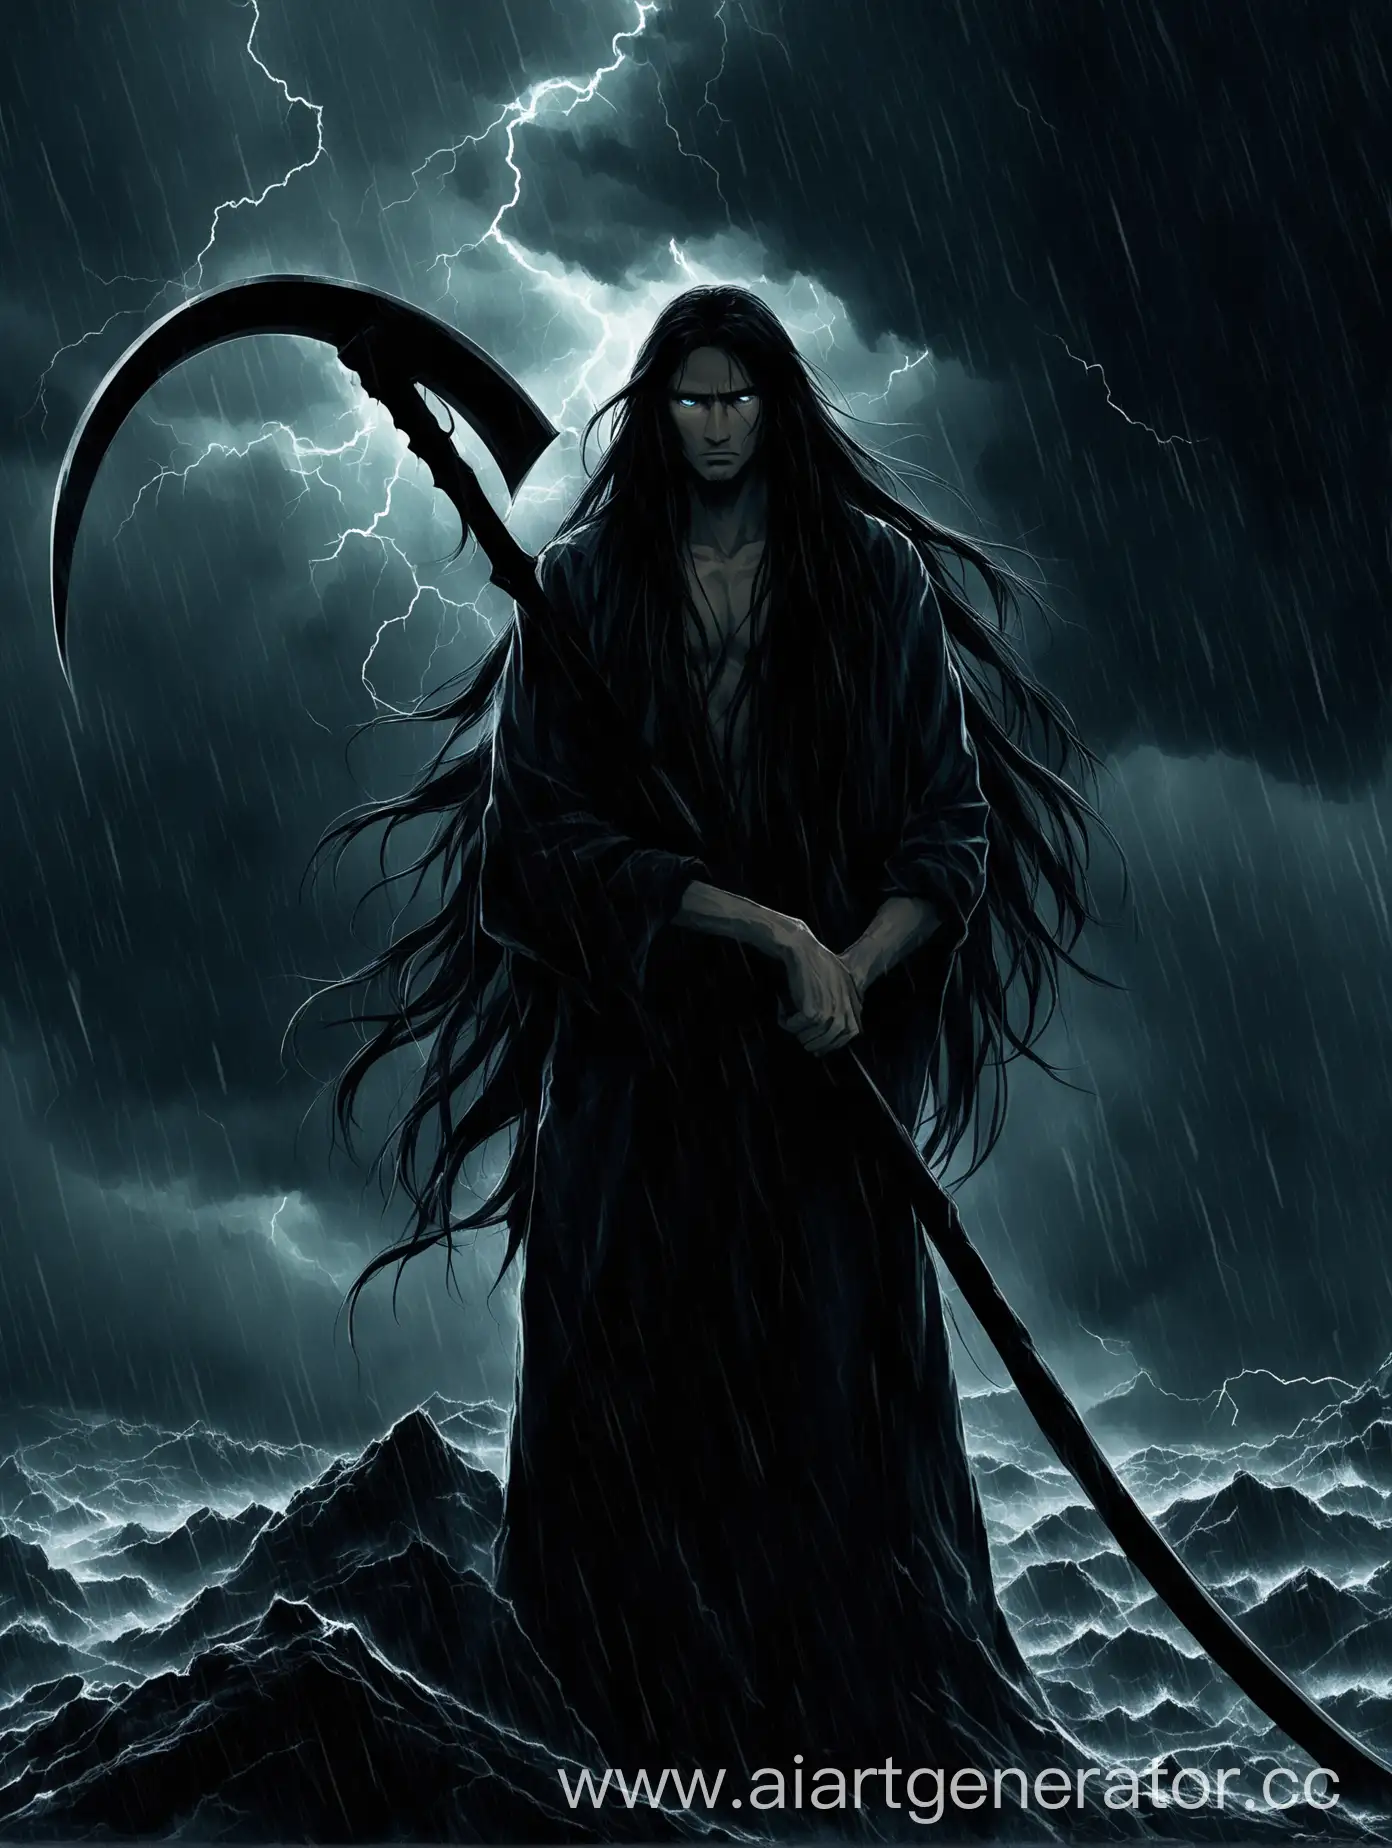 человек с длинными волосами во время грозы стоит а в руках у него коса и его глаз не видно из-за темноты